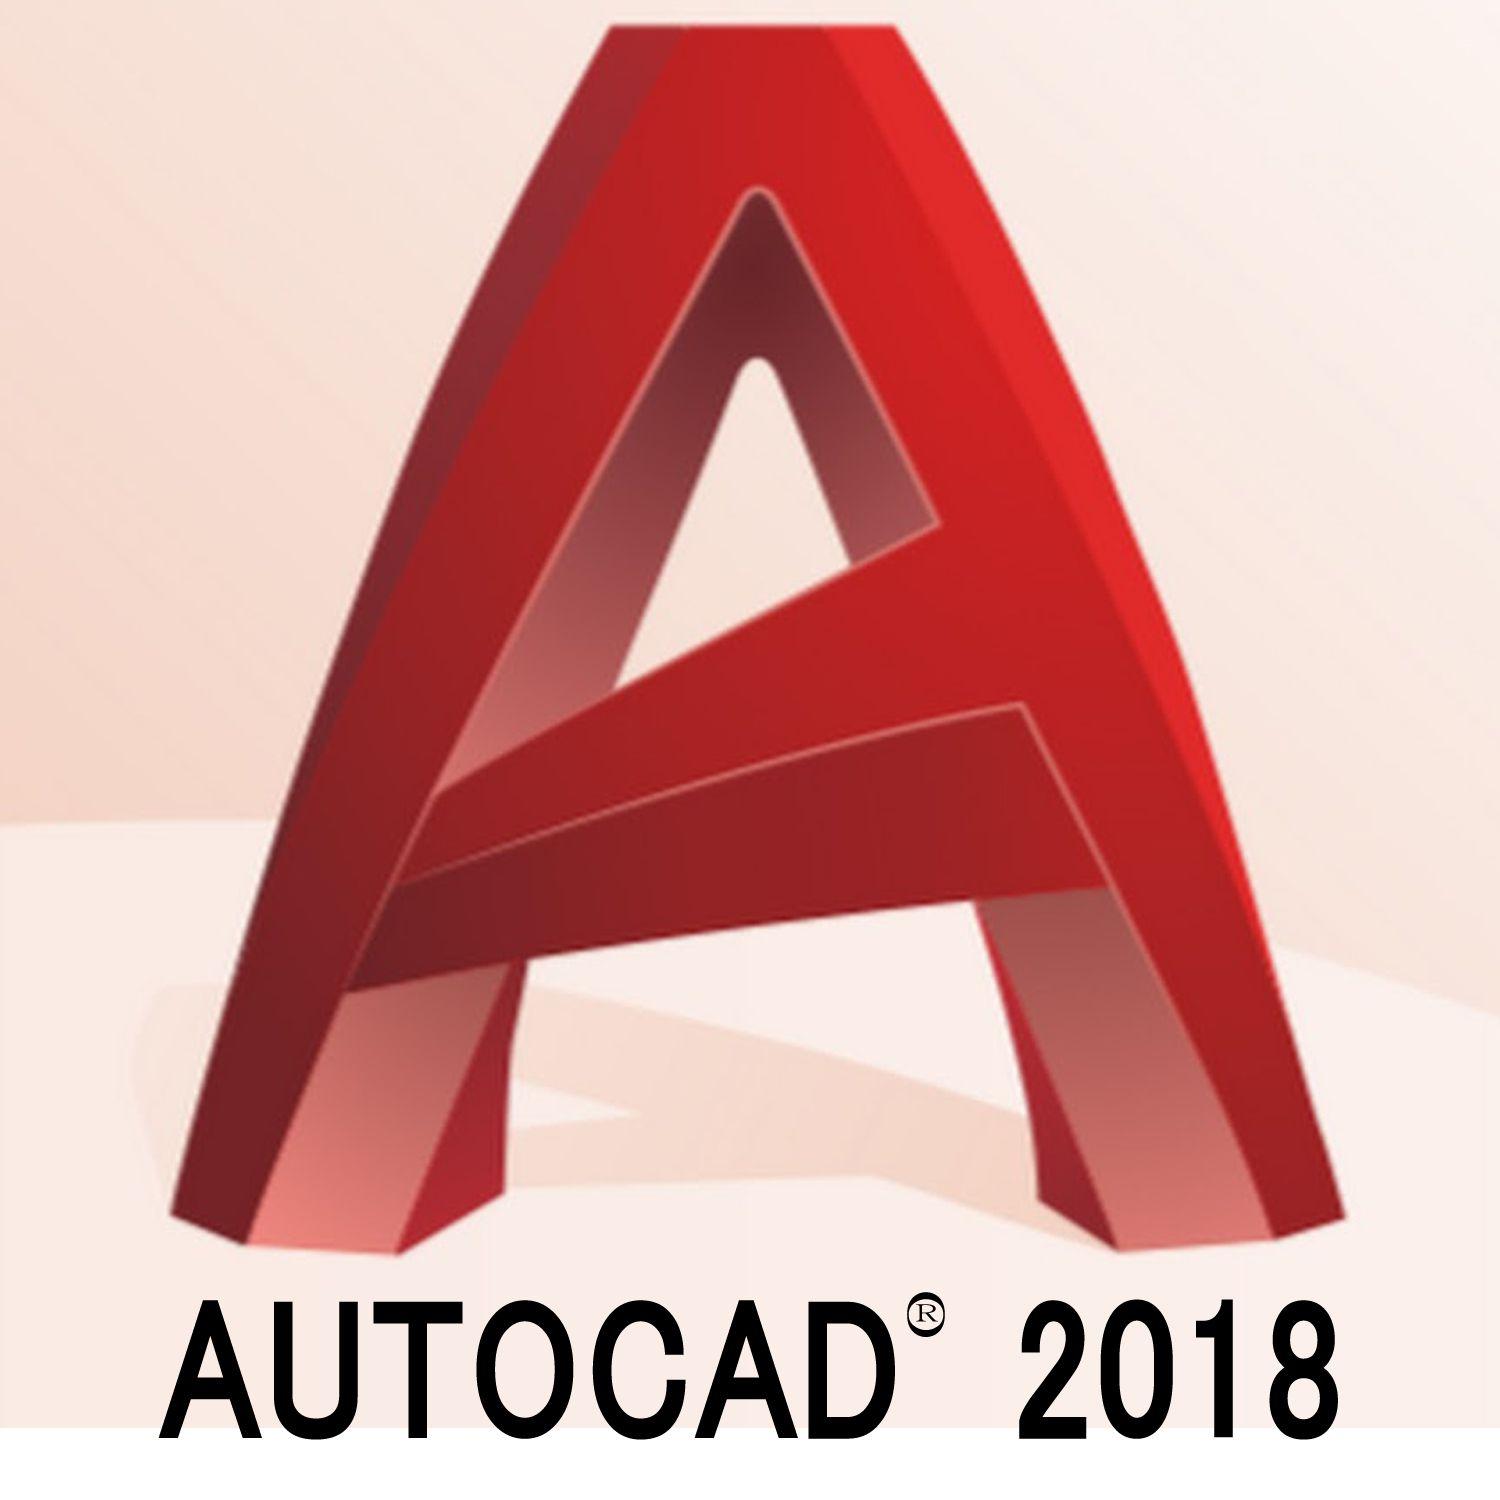 AutoCAD Logo - Autocad Logos